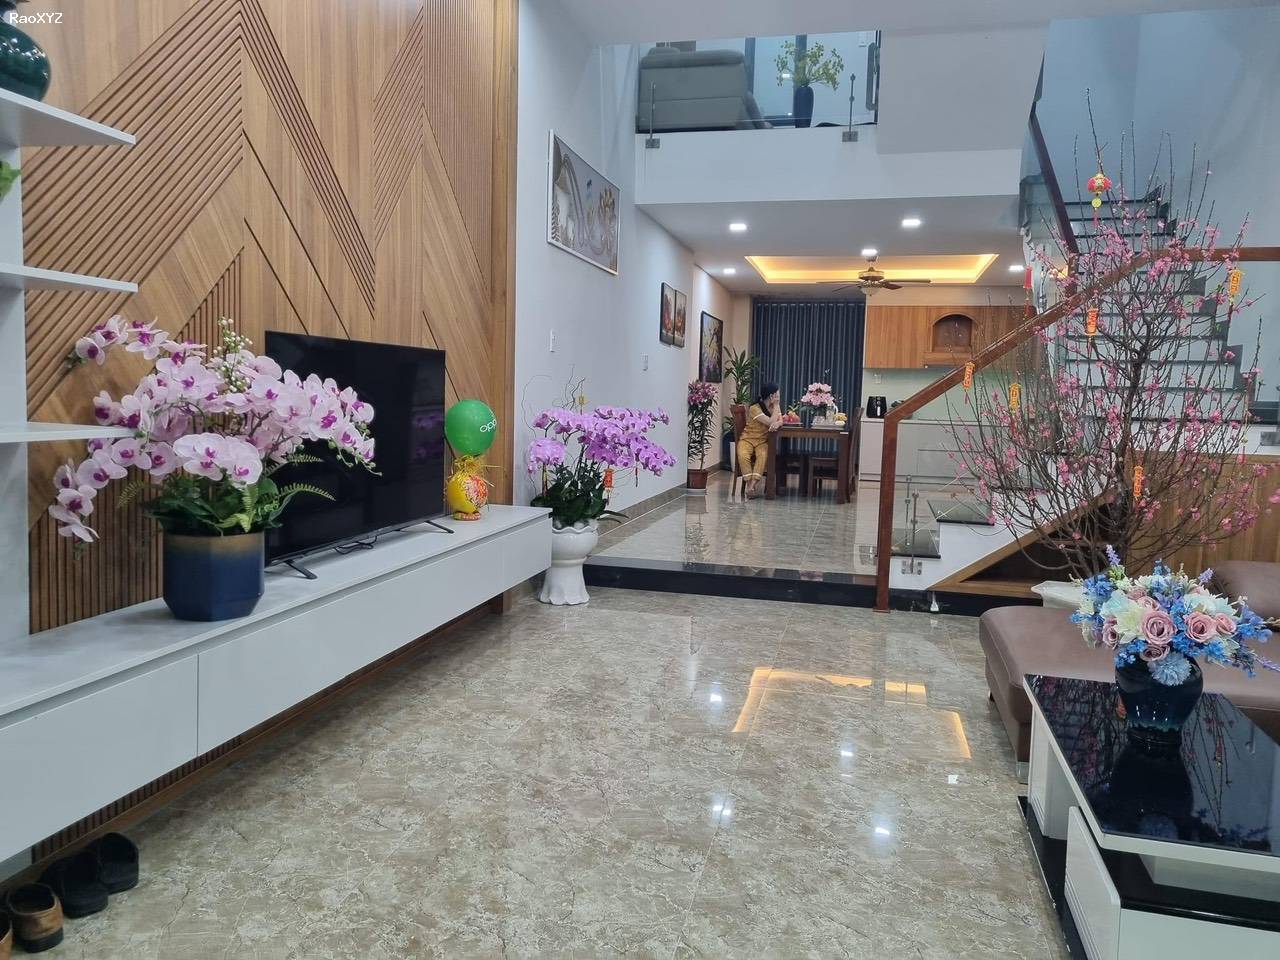 Sốc chỉ hơn 3tỷ đã sỡ hữu ngay căn nhà 3 tầng mới cứng đương Đồng Trí, Đà Nẵng